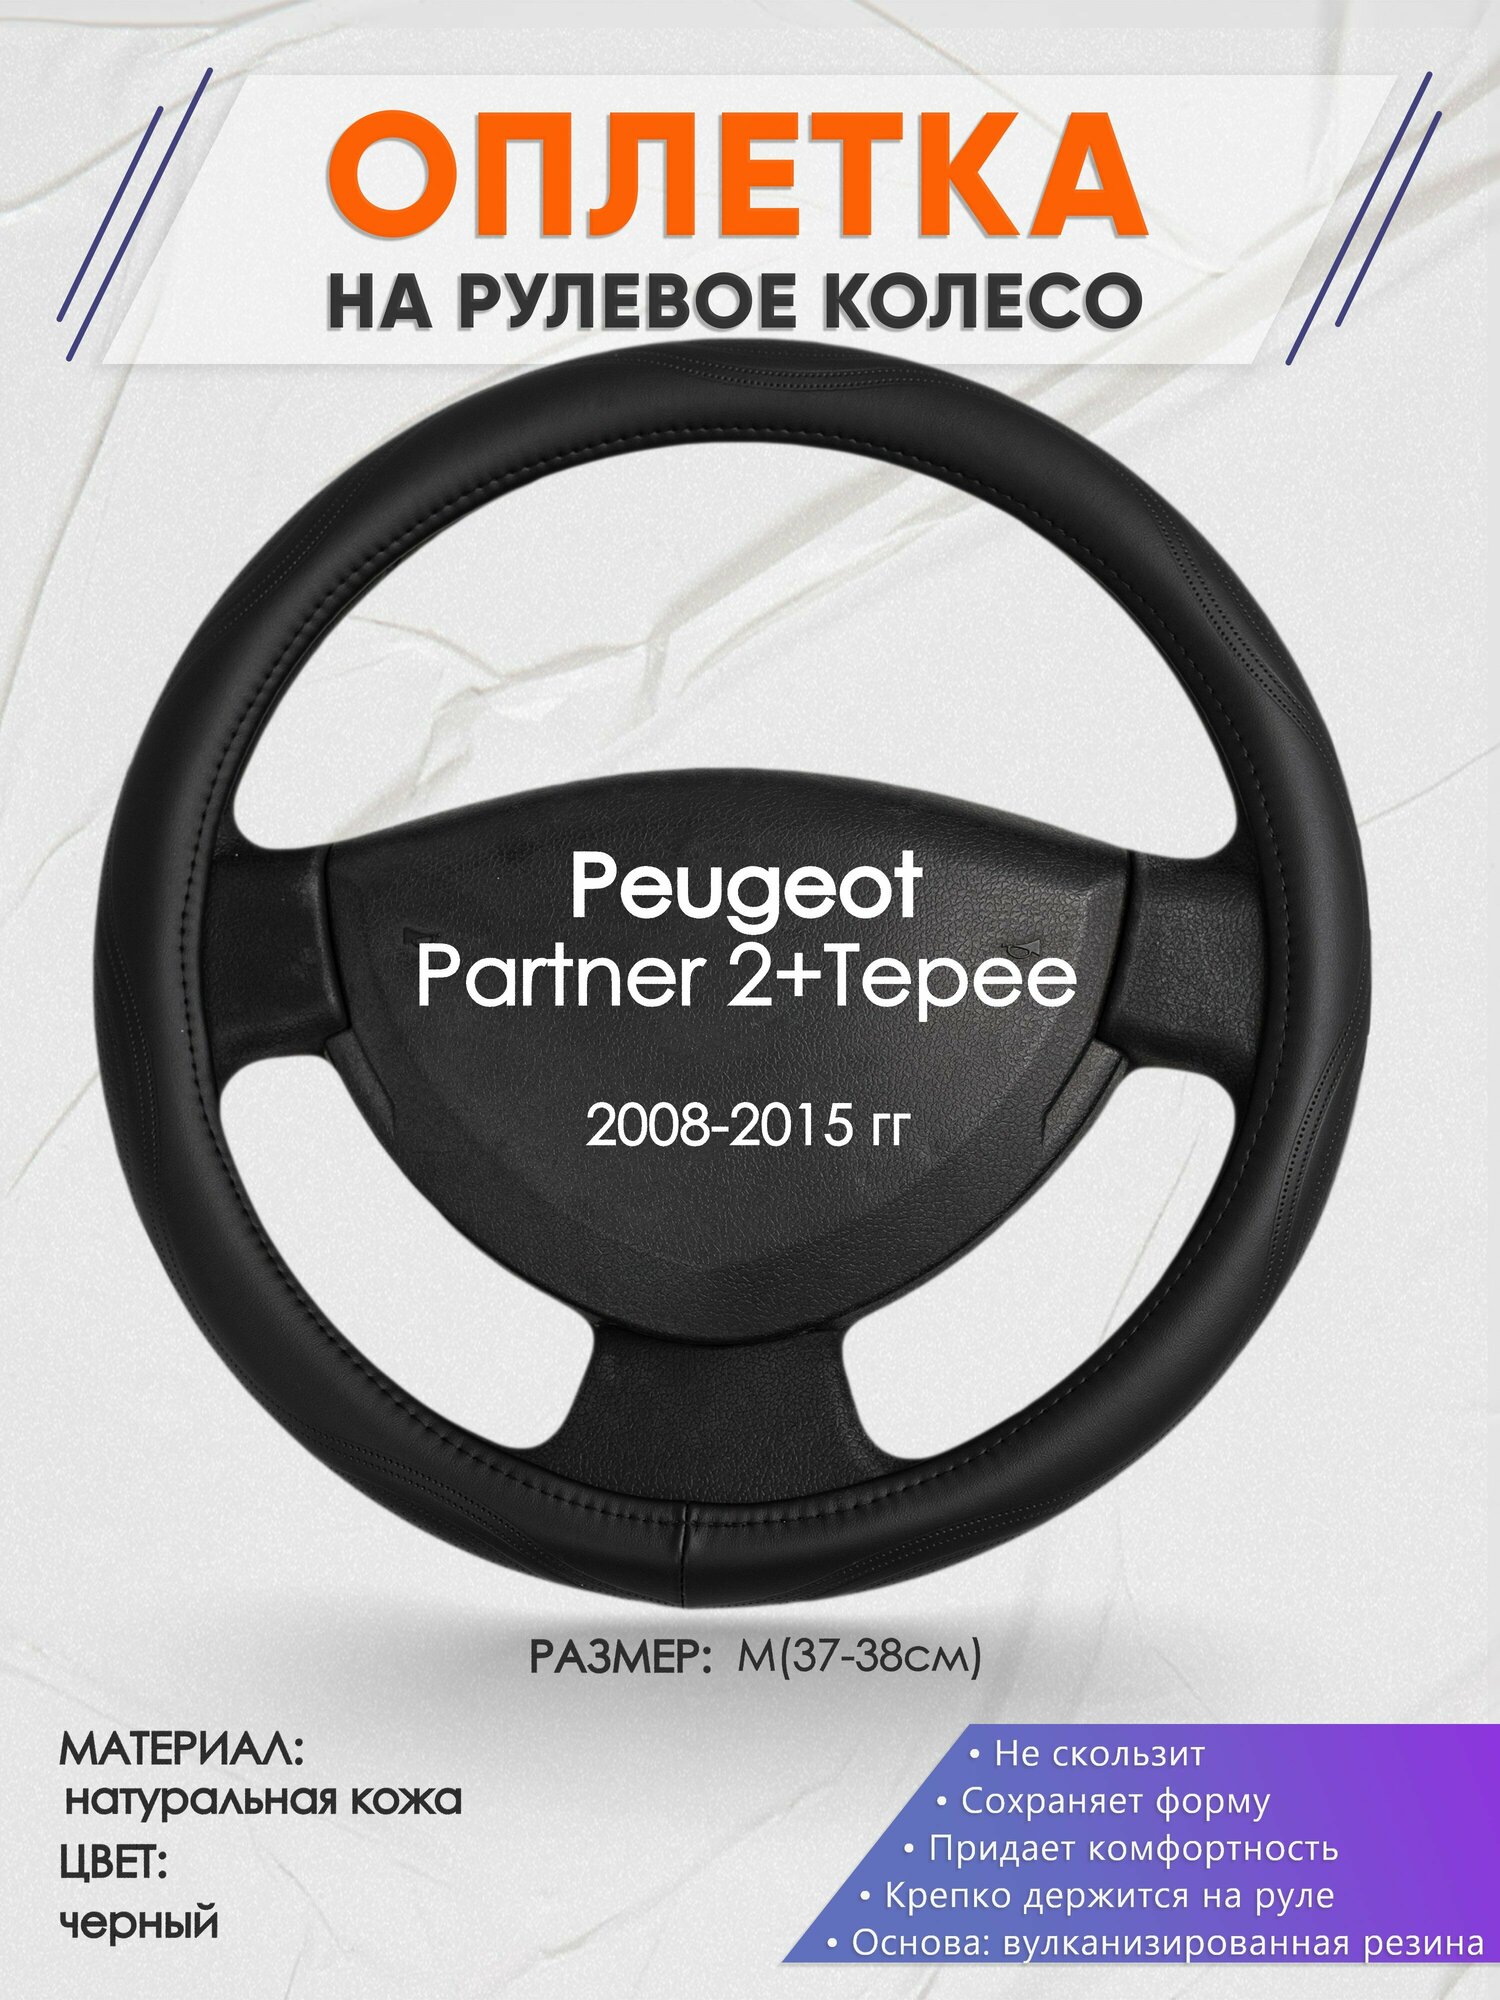 Оплетка на руль для Peugeot Partner 2+Tepee(Пежо Партнер 2) 2008-2015, M(37-38см), Натуральная кожа 29